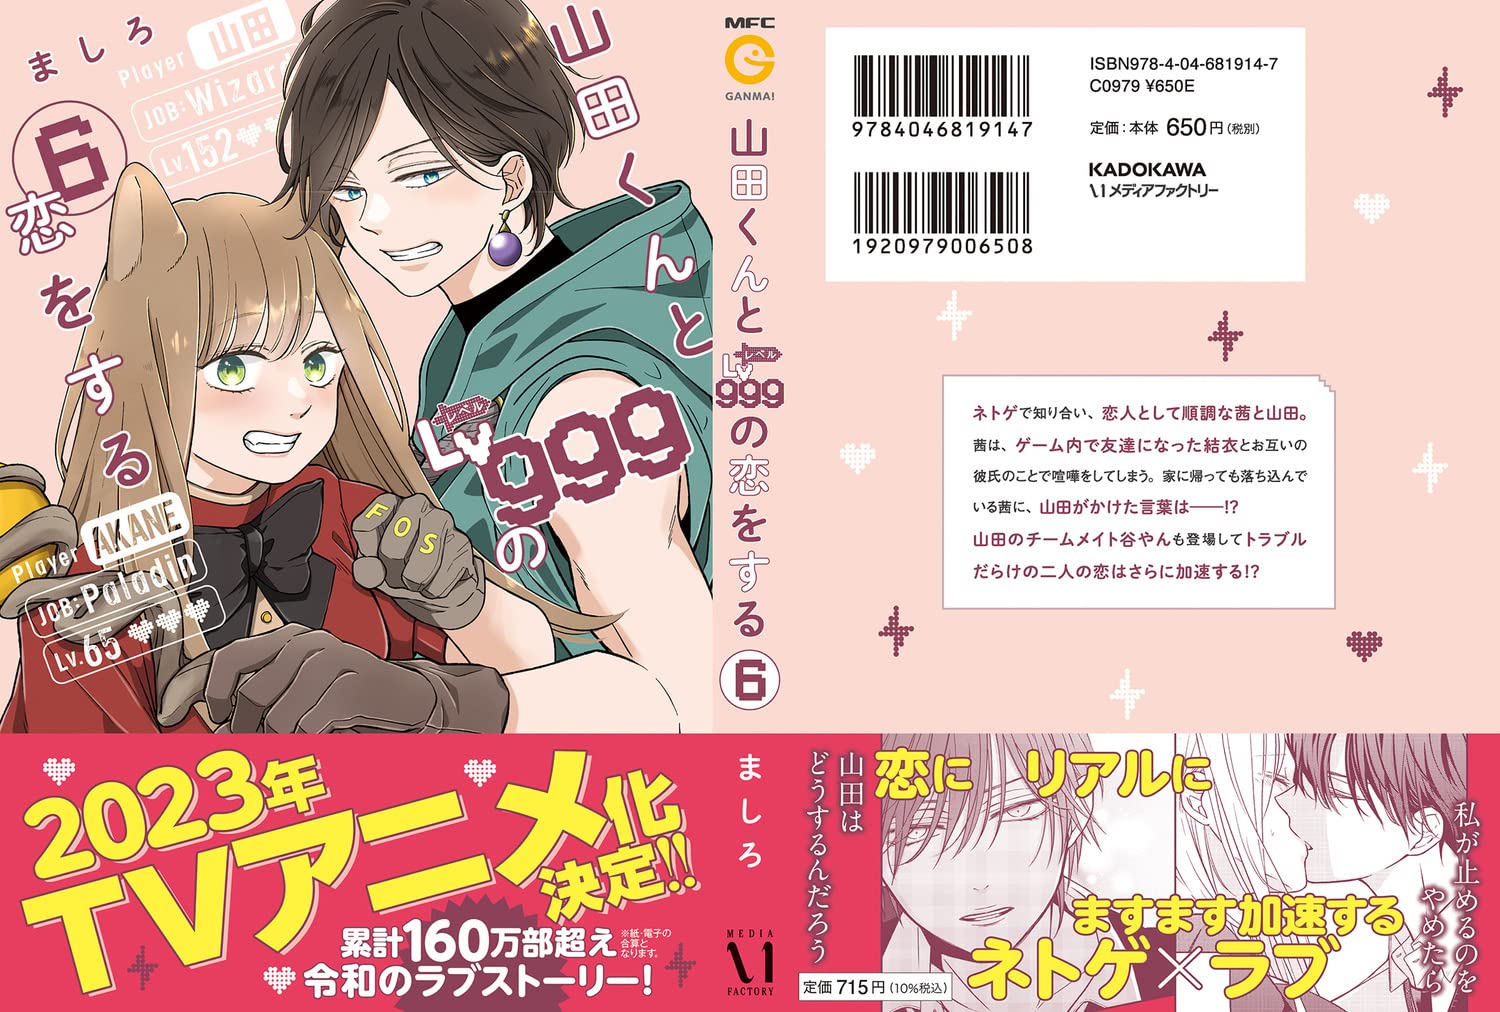 loving yamada at lv999 manga